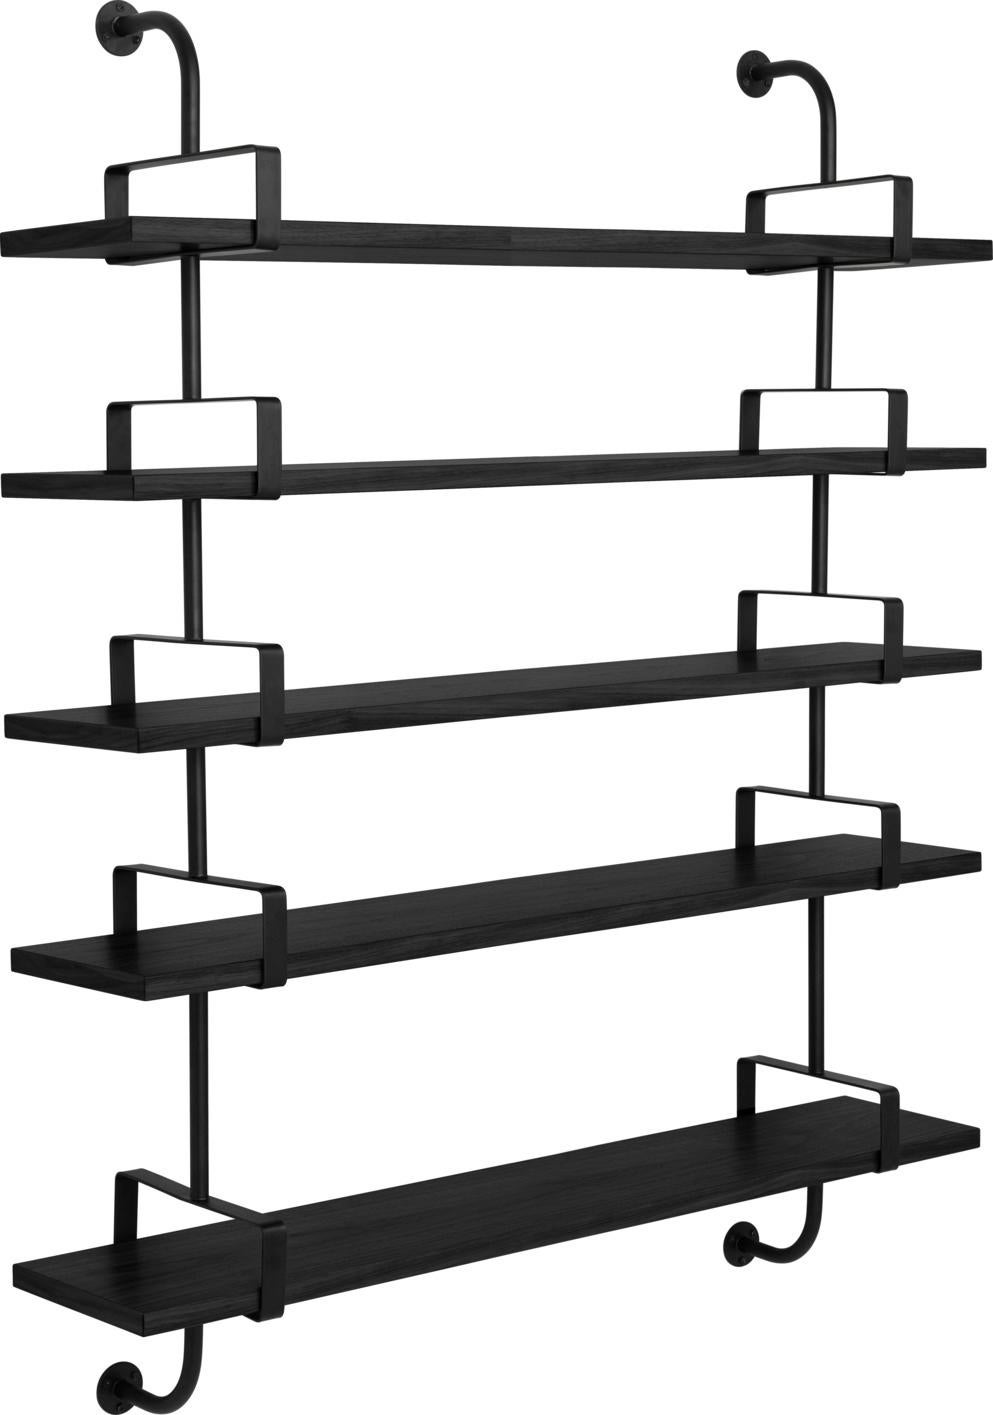 Mathieu Matégot 'Démon' 5-shelf system for GUBI in black ash.

The Démon Shelf, or the Biblio-Démon in Matégot’s original 1954 sketches, was part of a “plan d’execution de la bibliothèque,